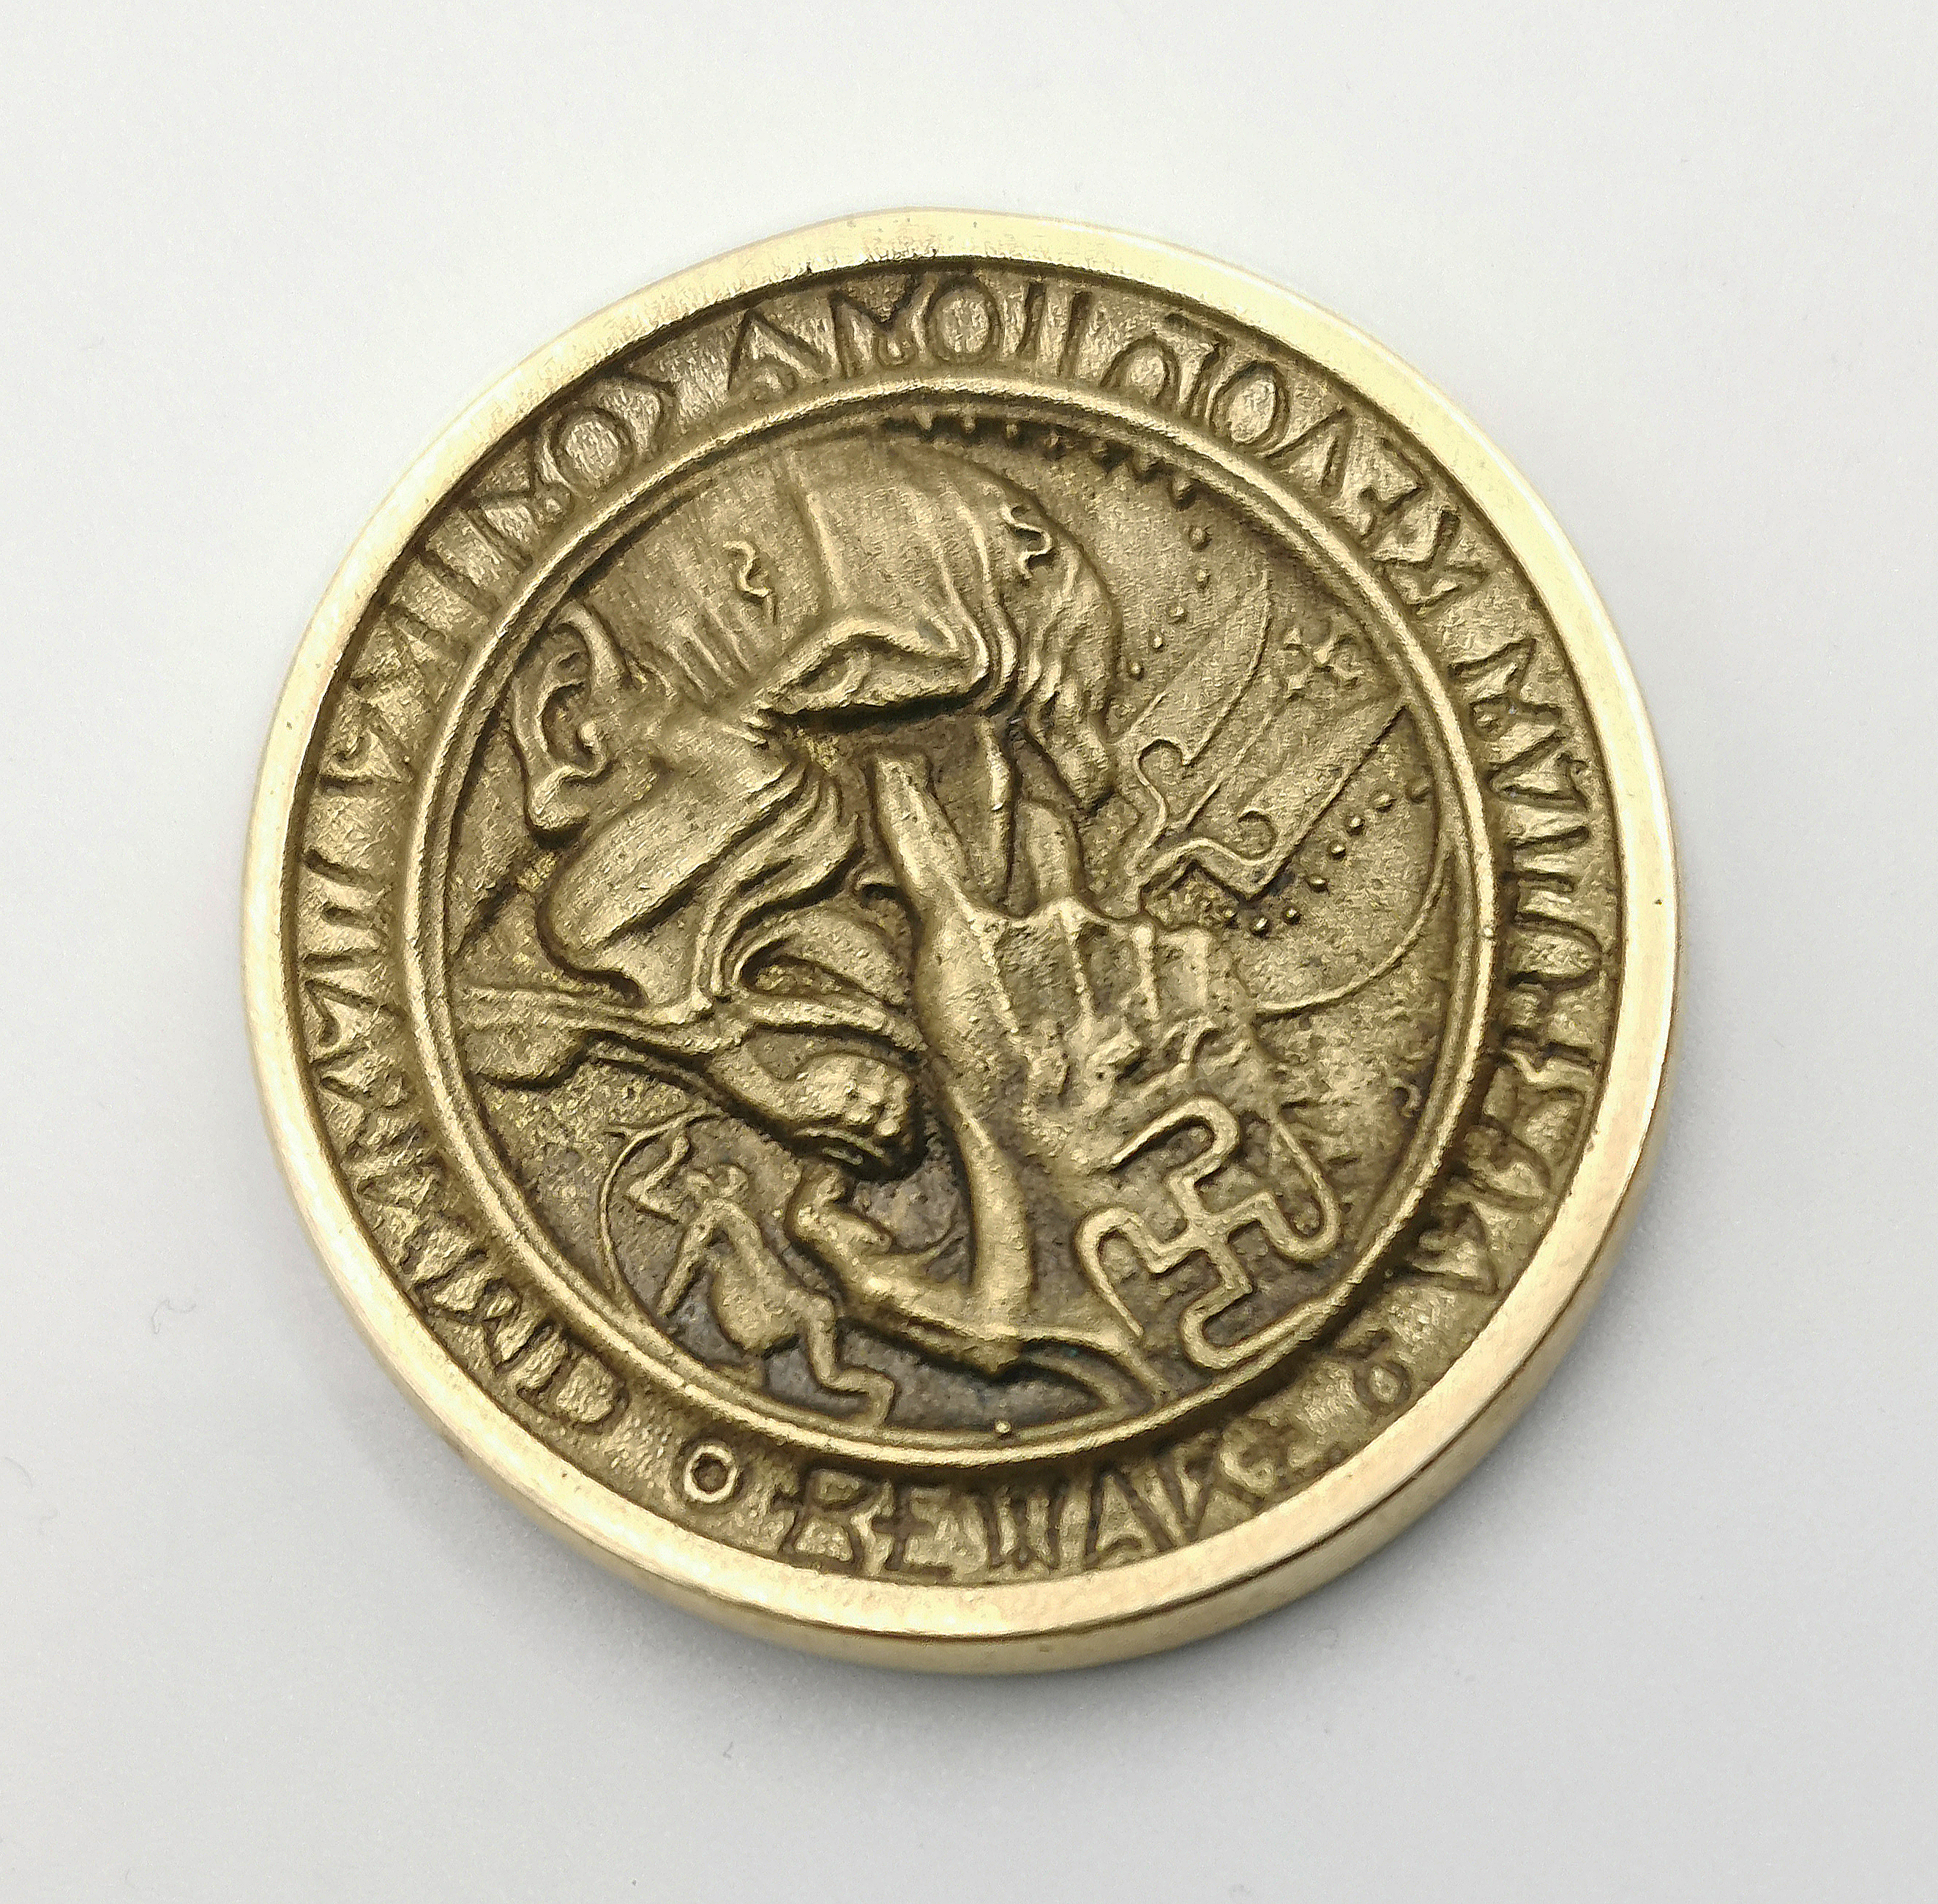 Sołżenicyn - medal, 1970